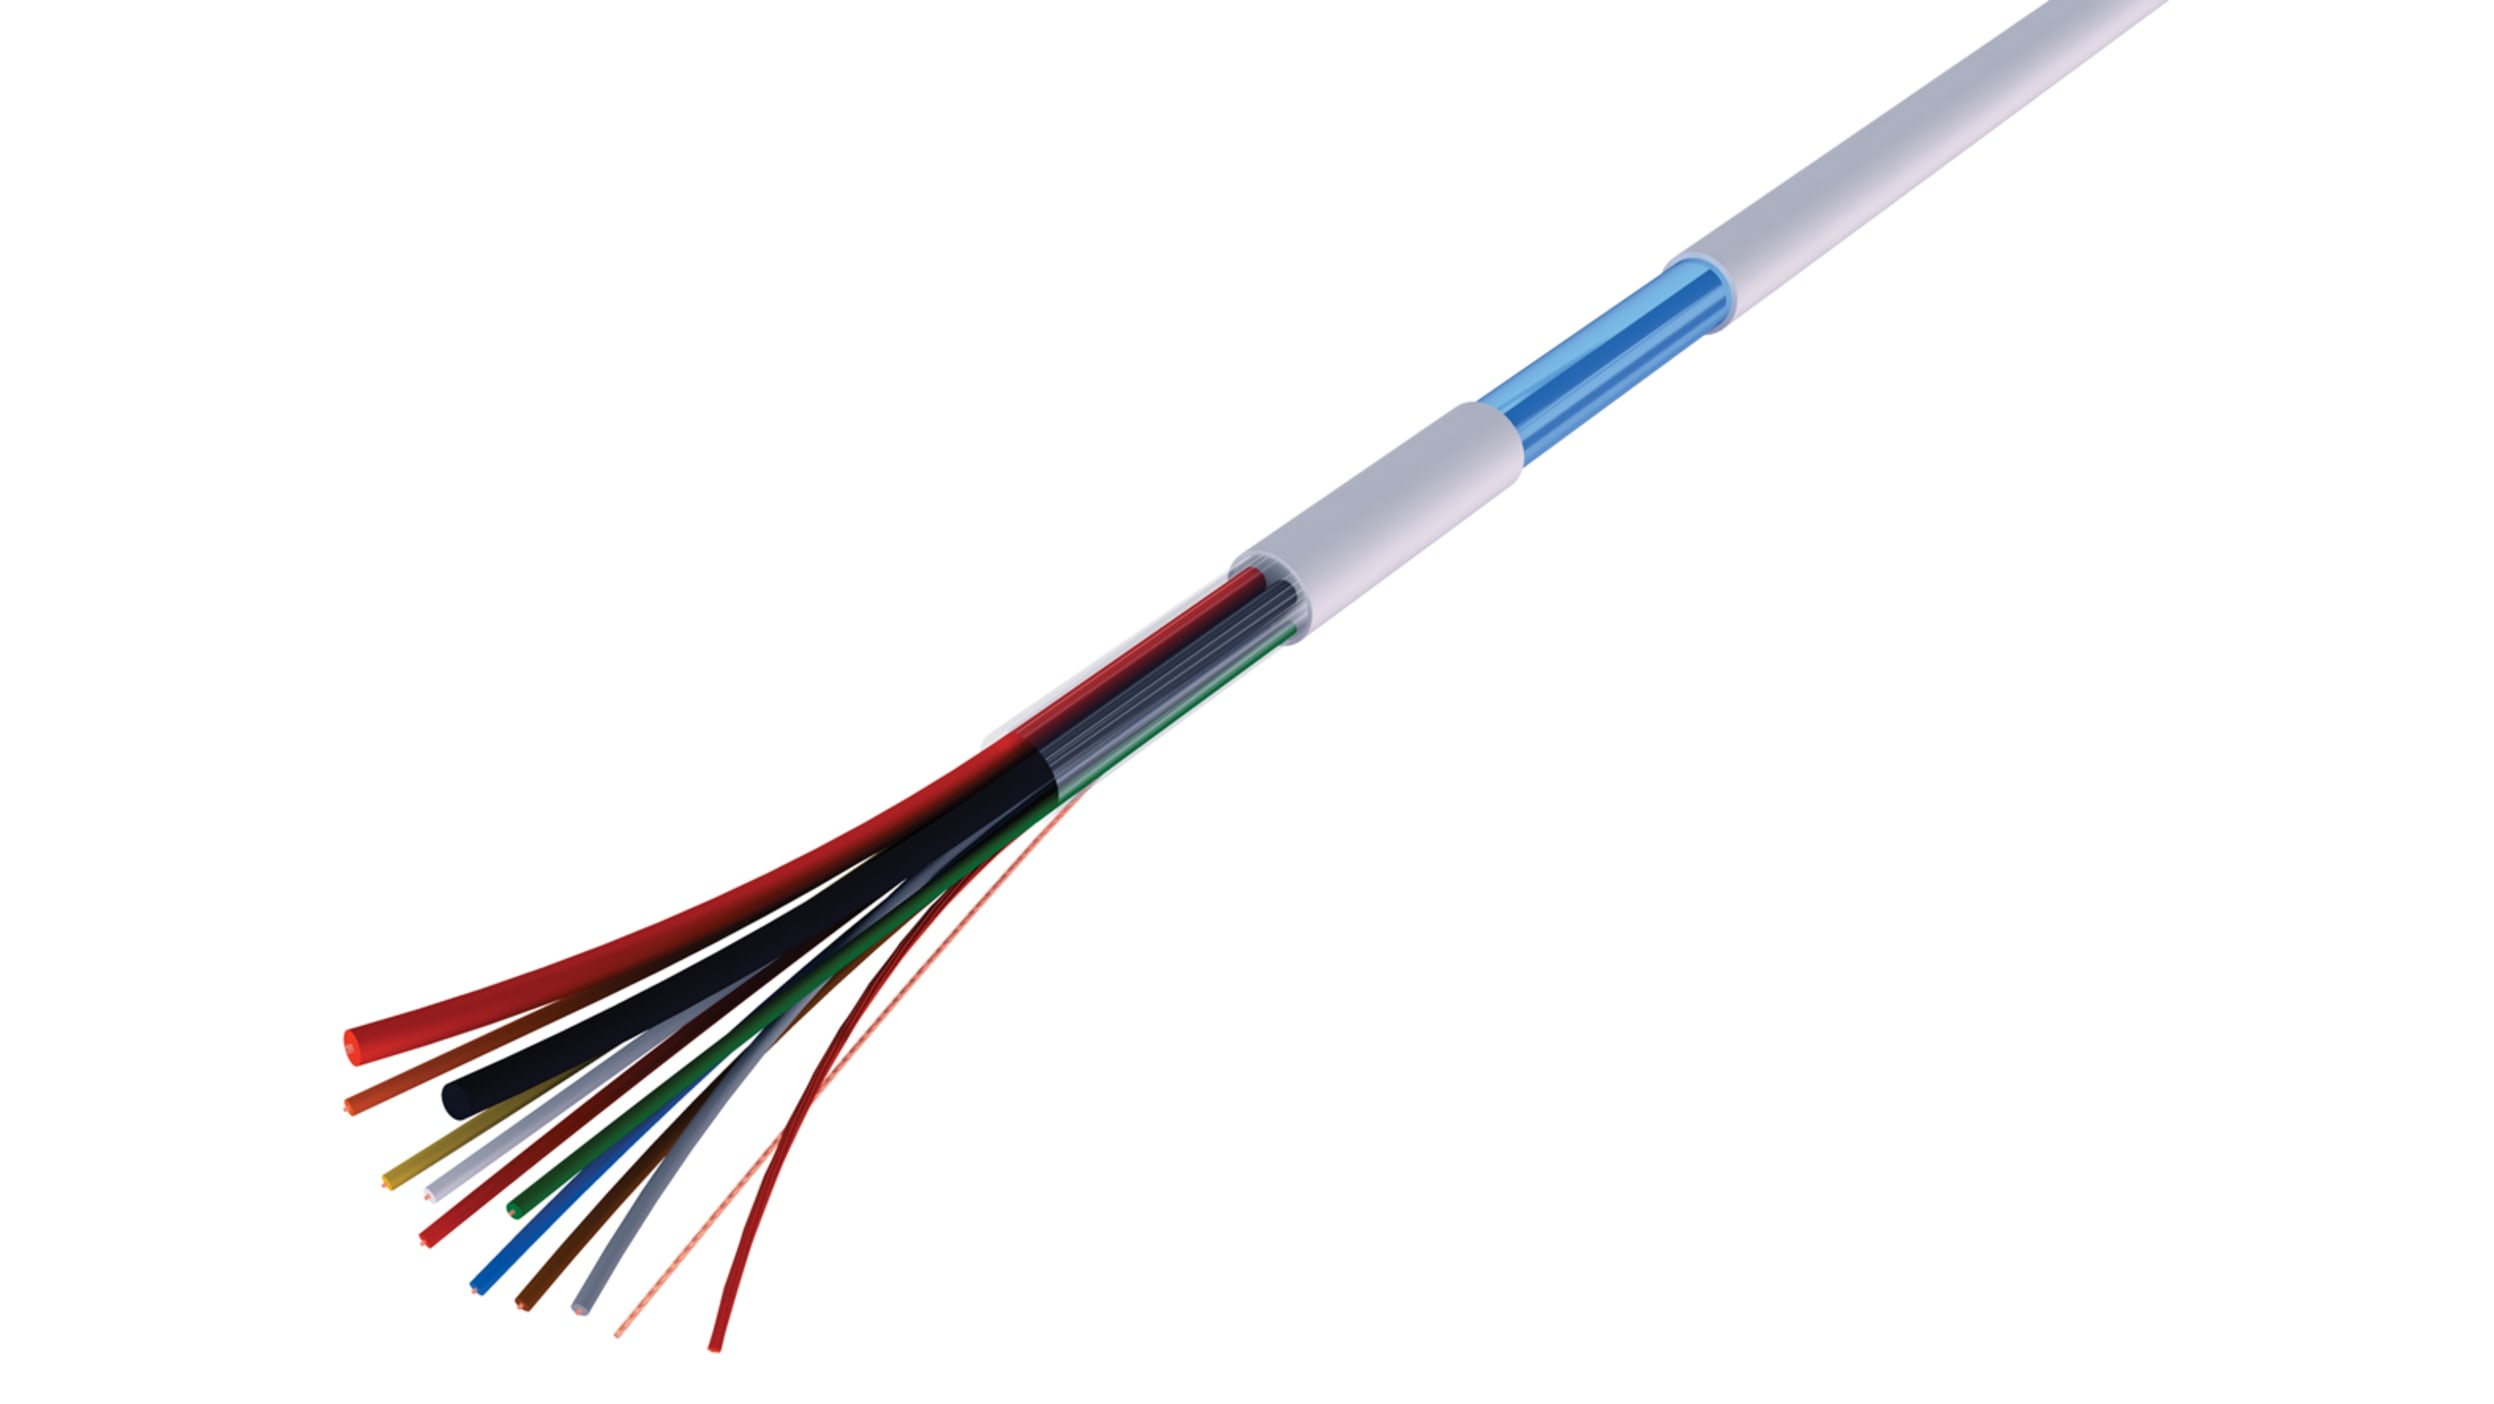 Steuerleitung 2-adriges Kabel x 0,8 mm (Rolle von 100 Meter) - Snoek